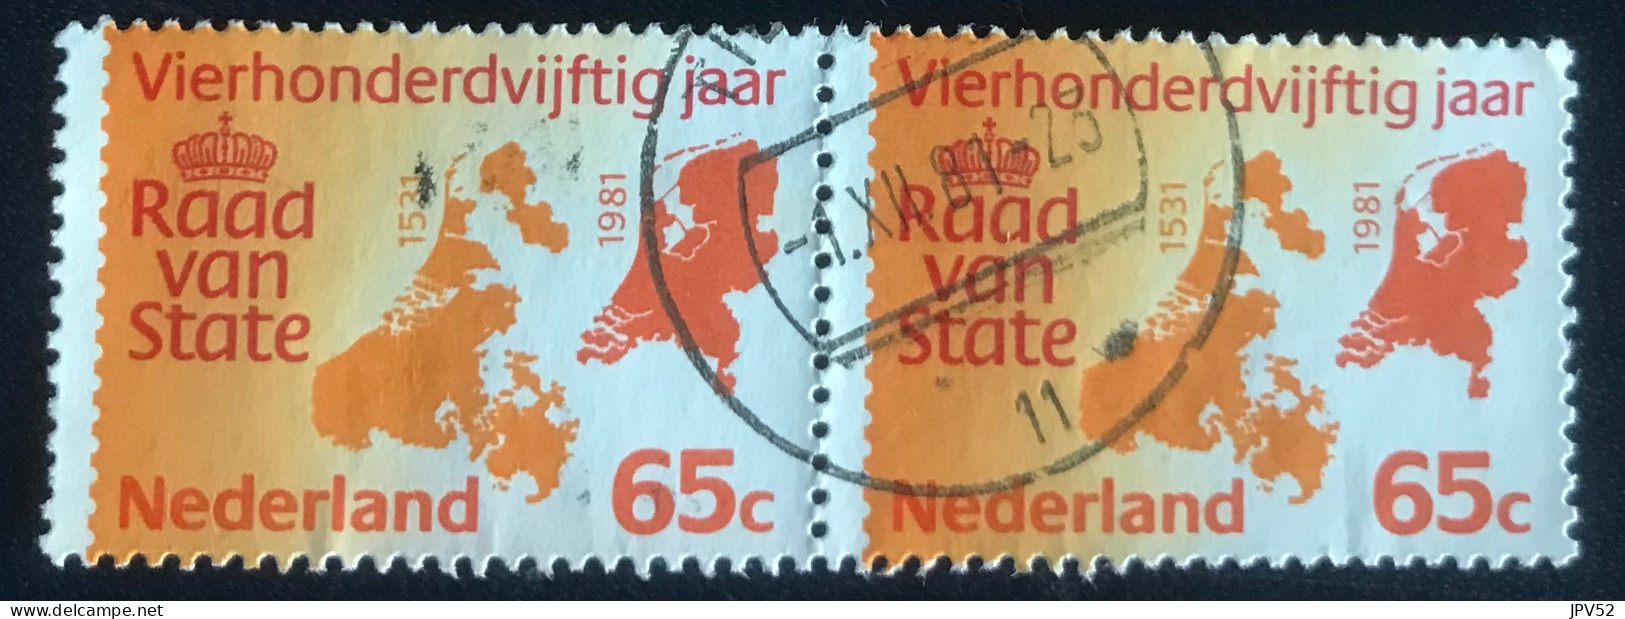 Nederland - C3/49 - 1981 - (°)used - Michel 1188 - 450j Raad Van State - Gebruikt